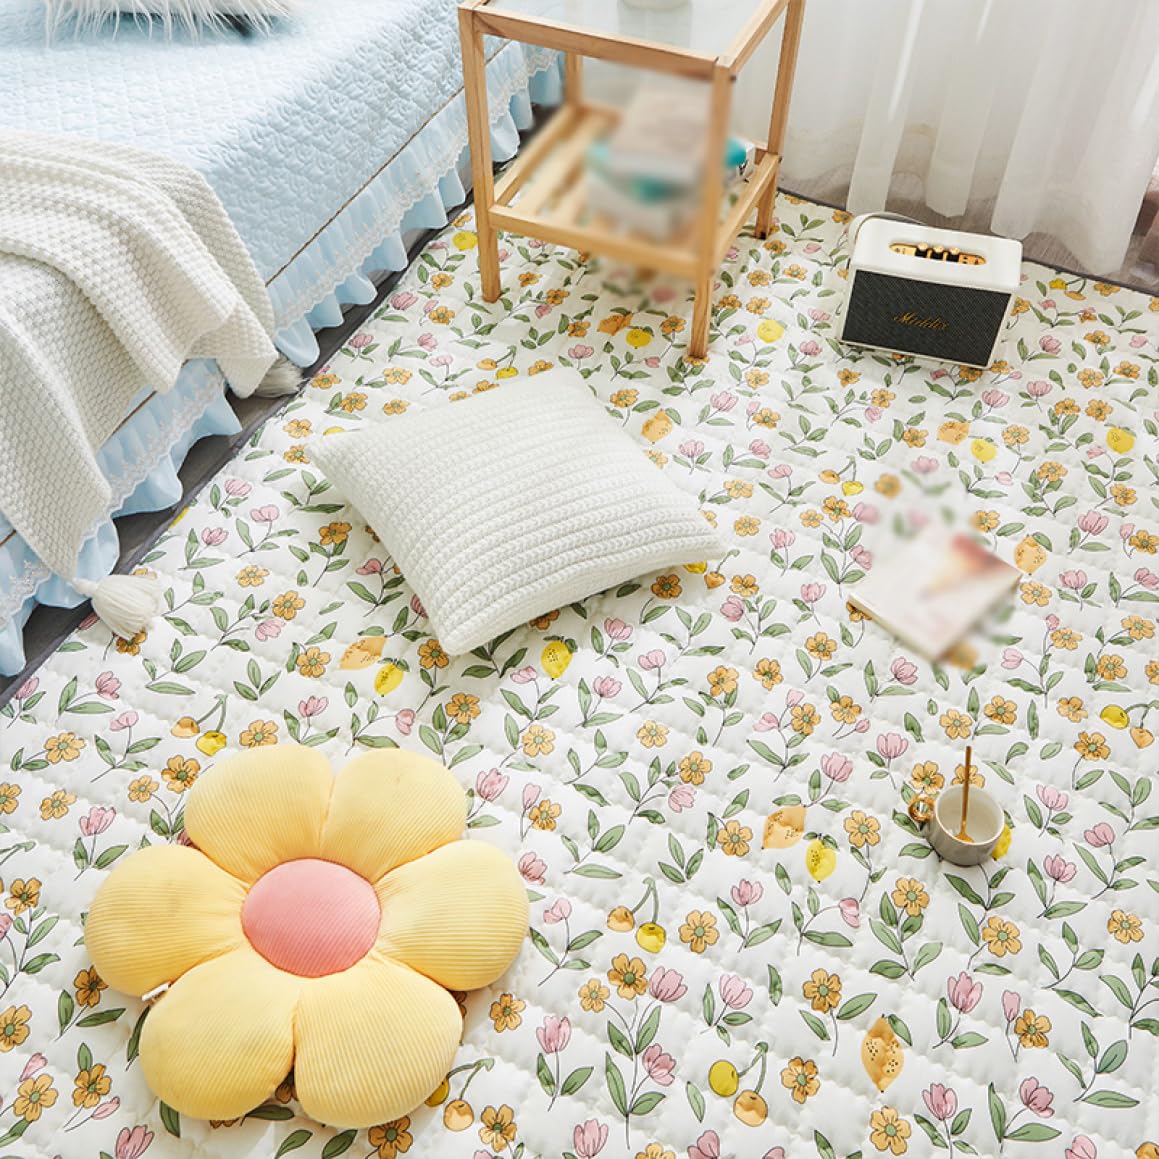 [XLOYP] ラグ キルトラグ 黄色 綿 洗える ホットカーペット対応 床暖房 おしゃれ じゅうたん ラグマット キルティング コーヒーテーブル